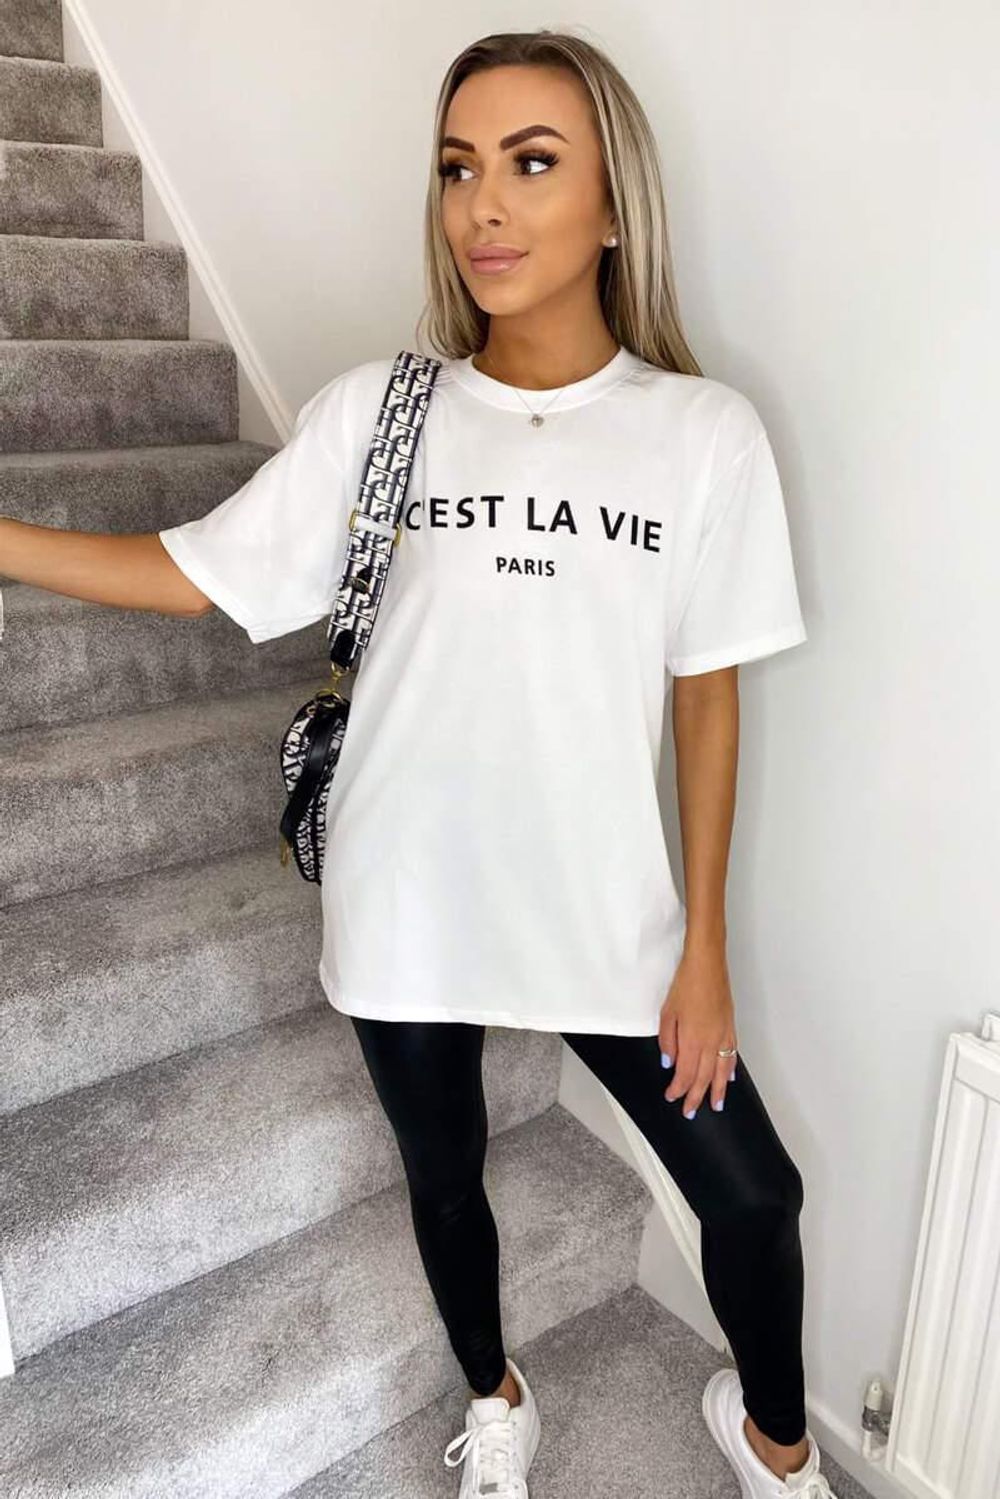 "C'est La Vie" Paris T-shirts